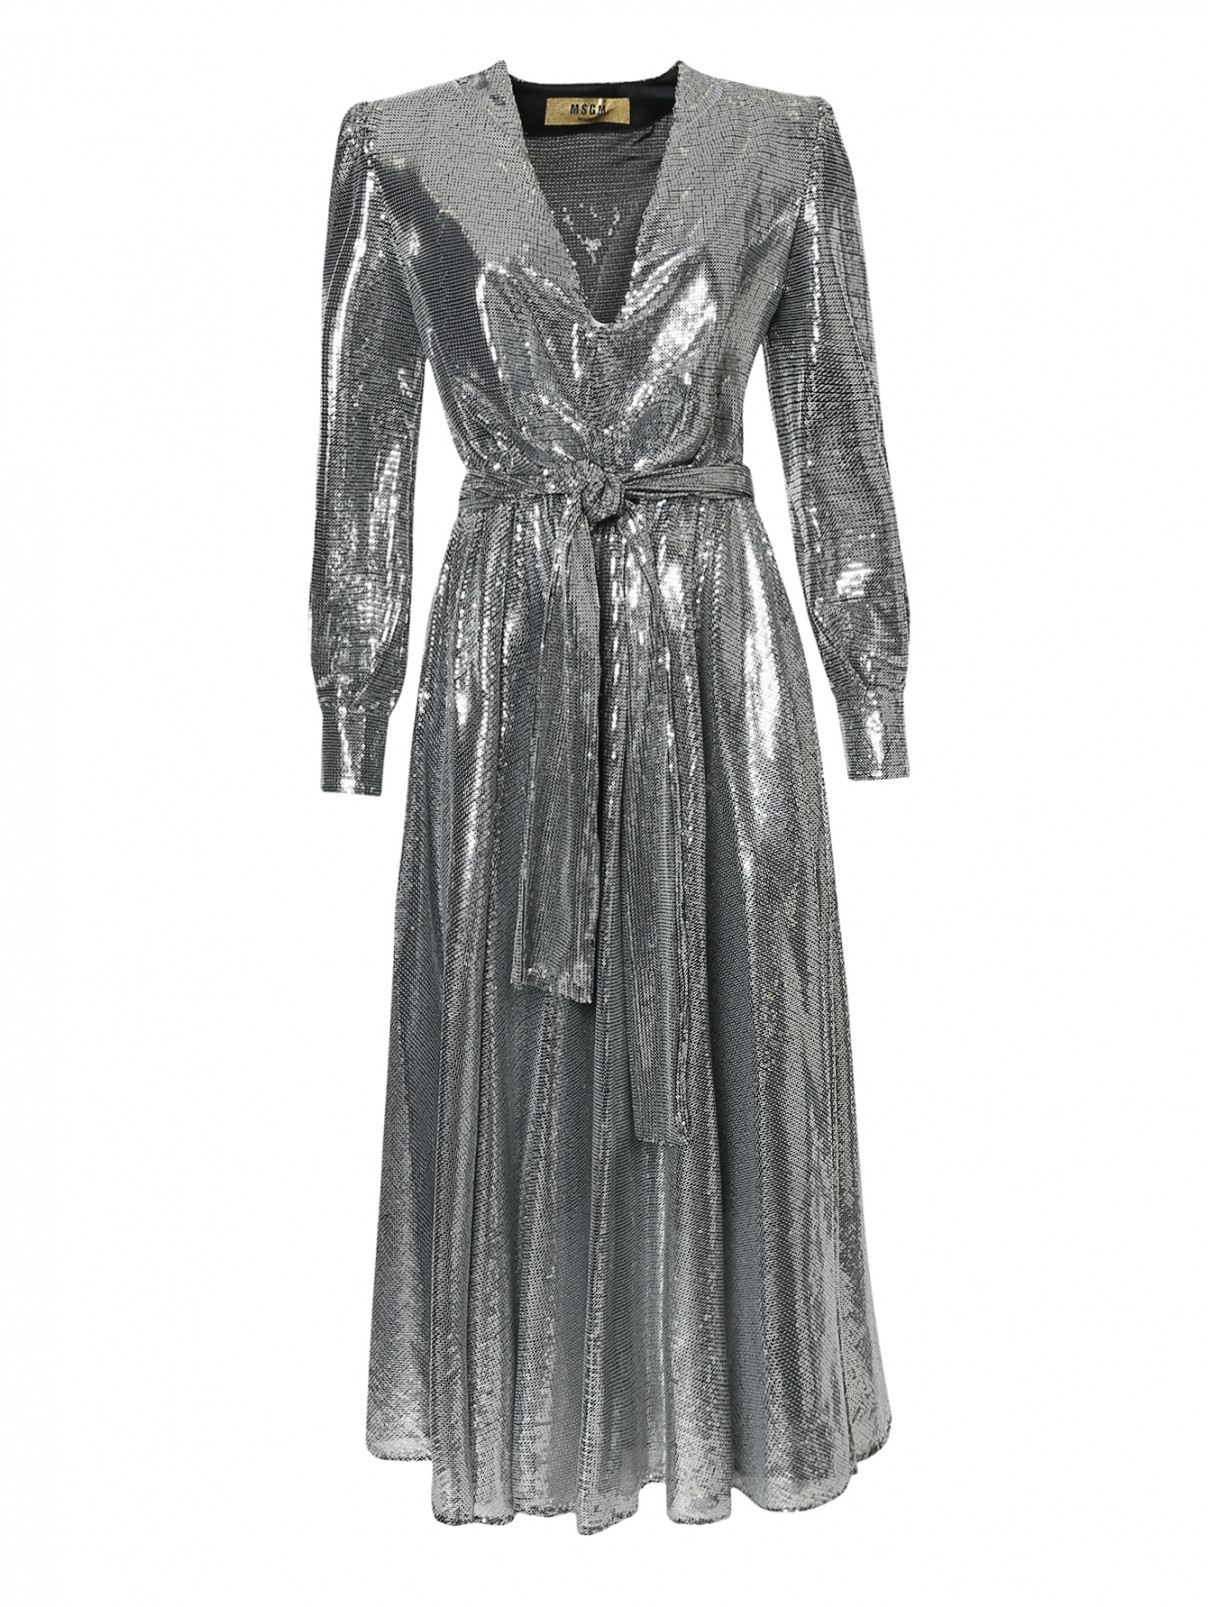 Платье вышитое пайетками, со сборкой на талии MSGM  –  Общий вид  – Цвет:  Серый